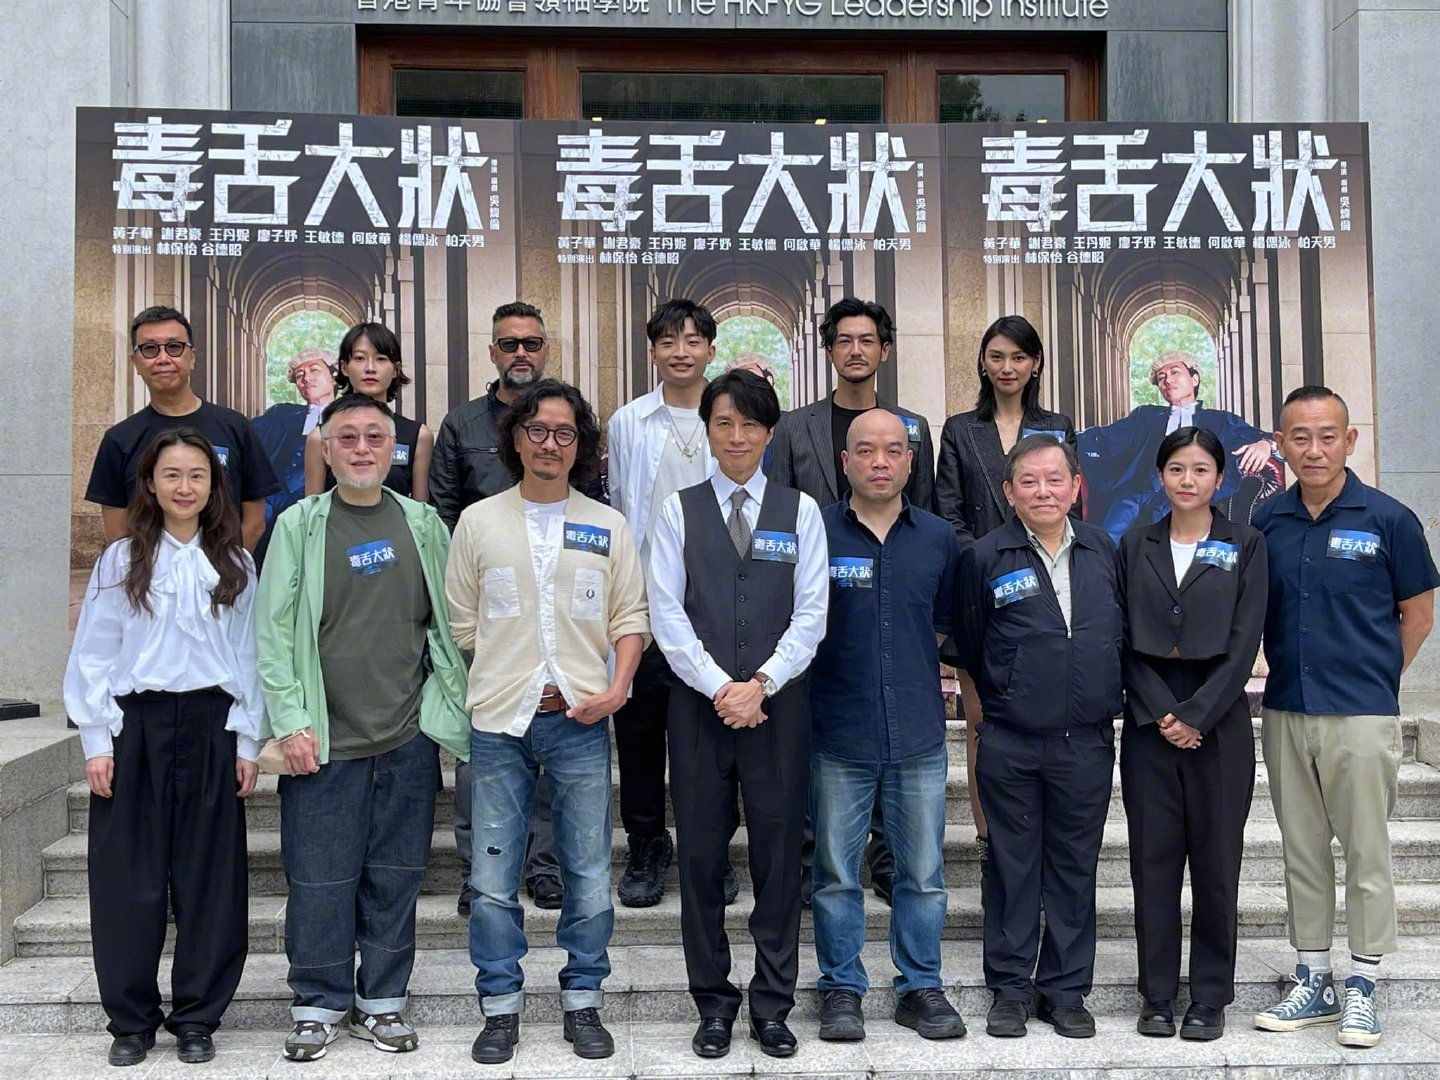 黄子华主演影片《毒舌大状》于5月23日开机。